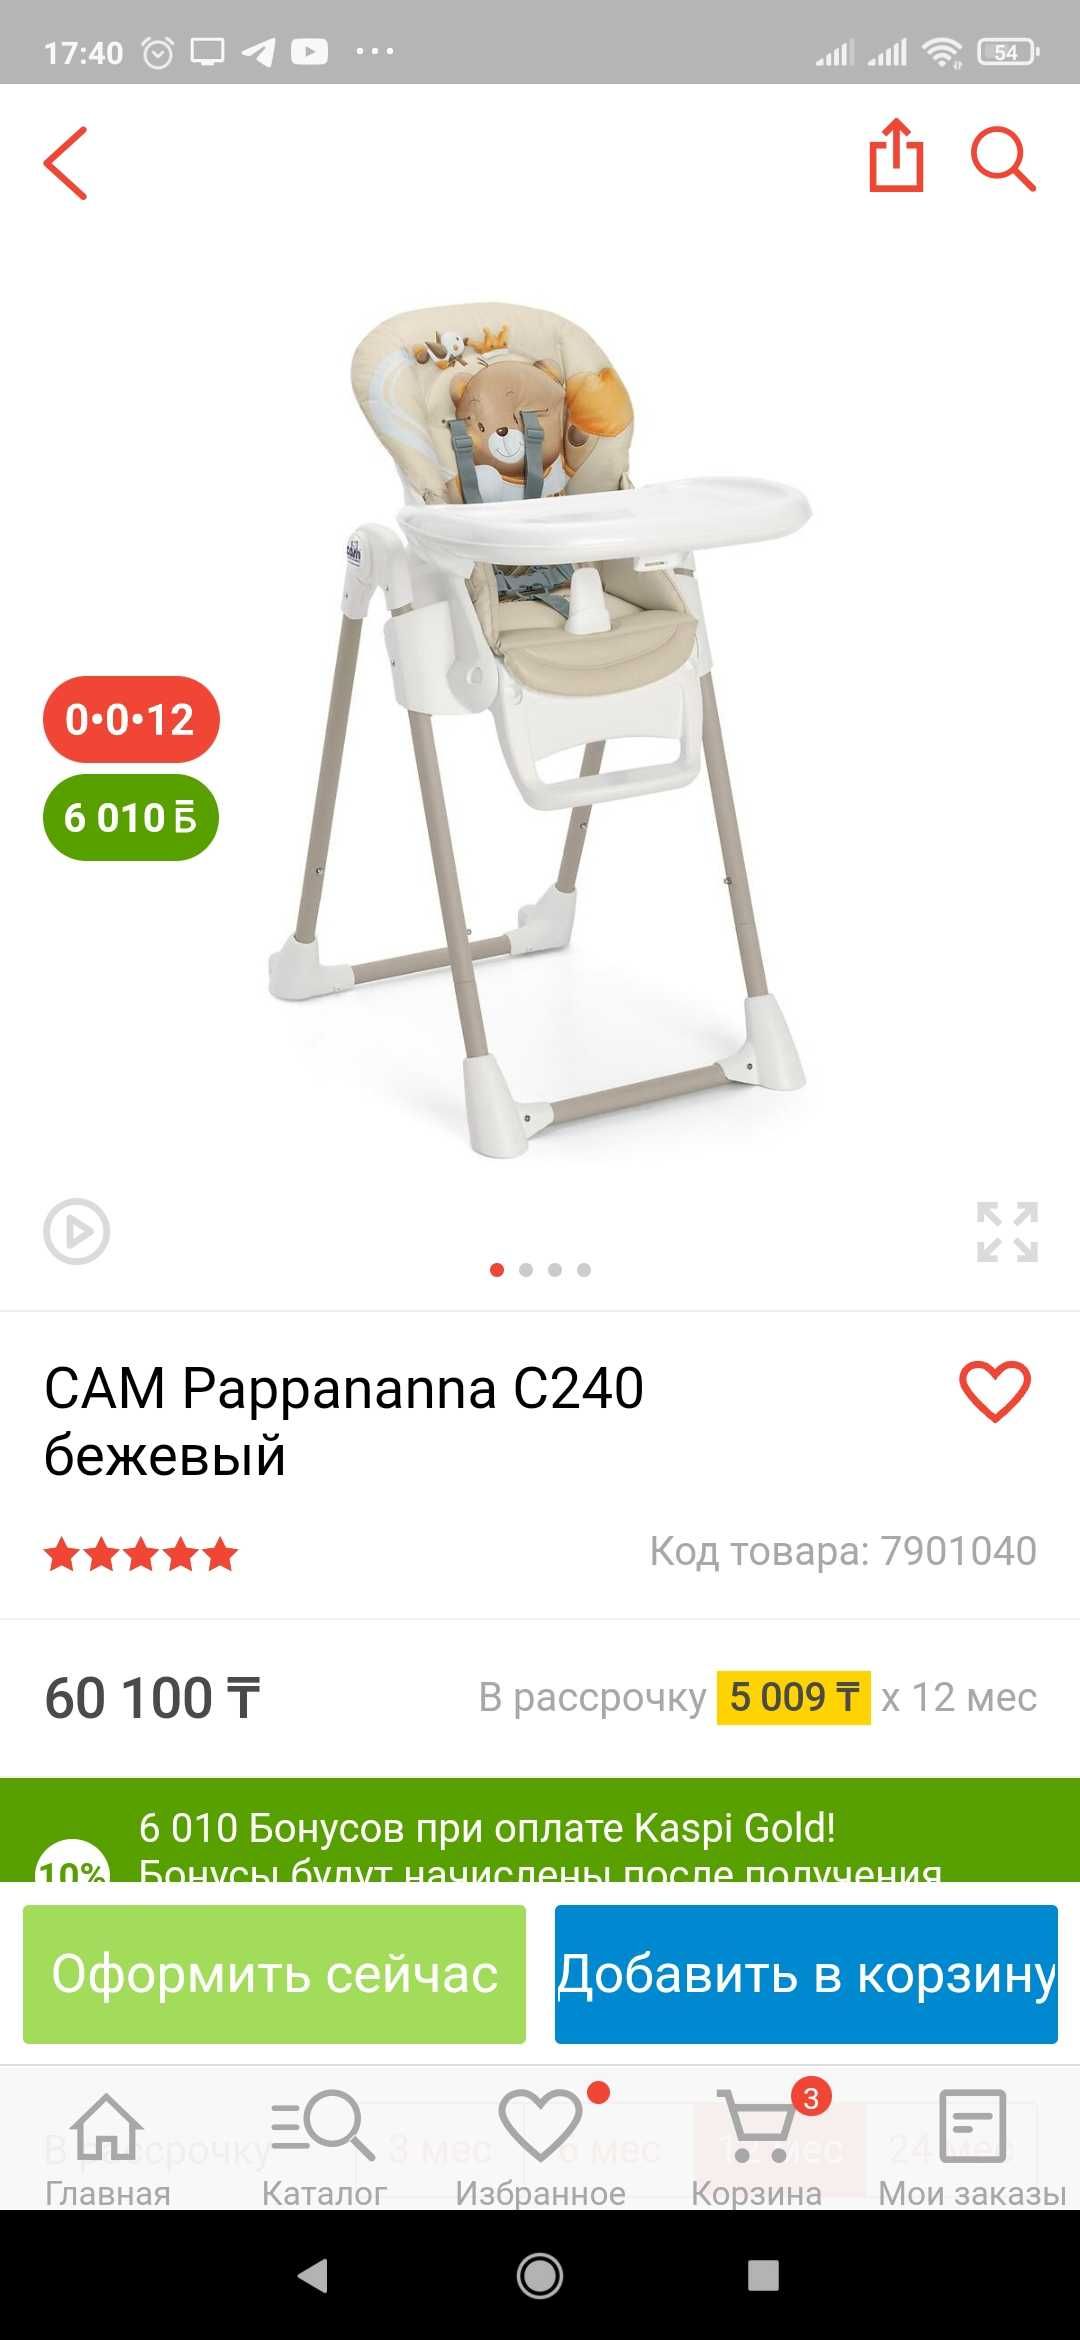 Продам стульчик для кормления, Итальянский бренд САМ.